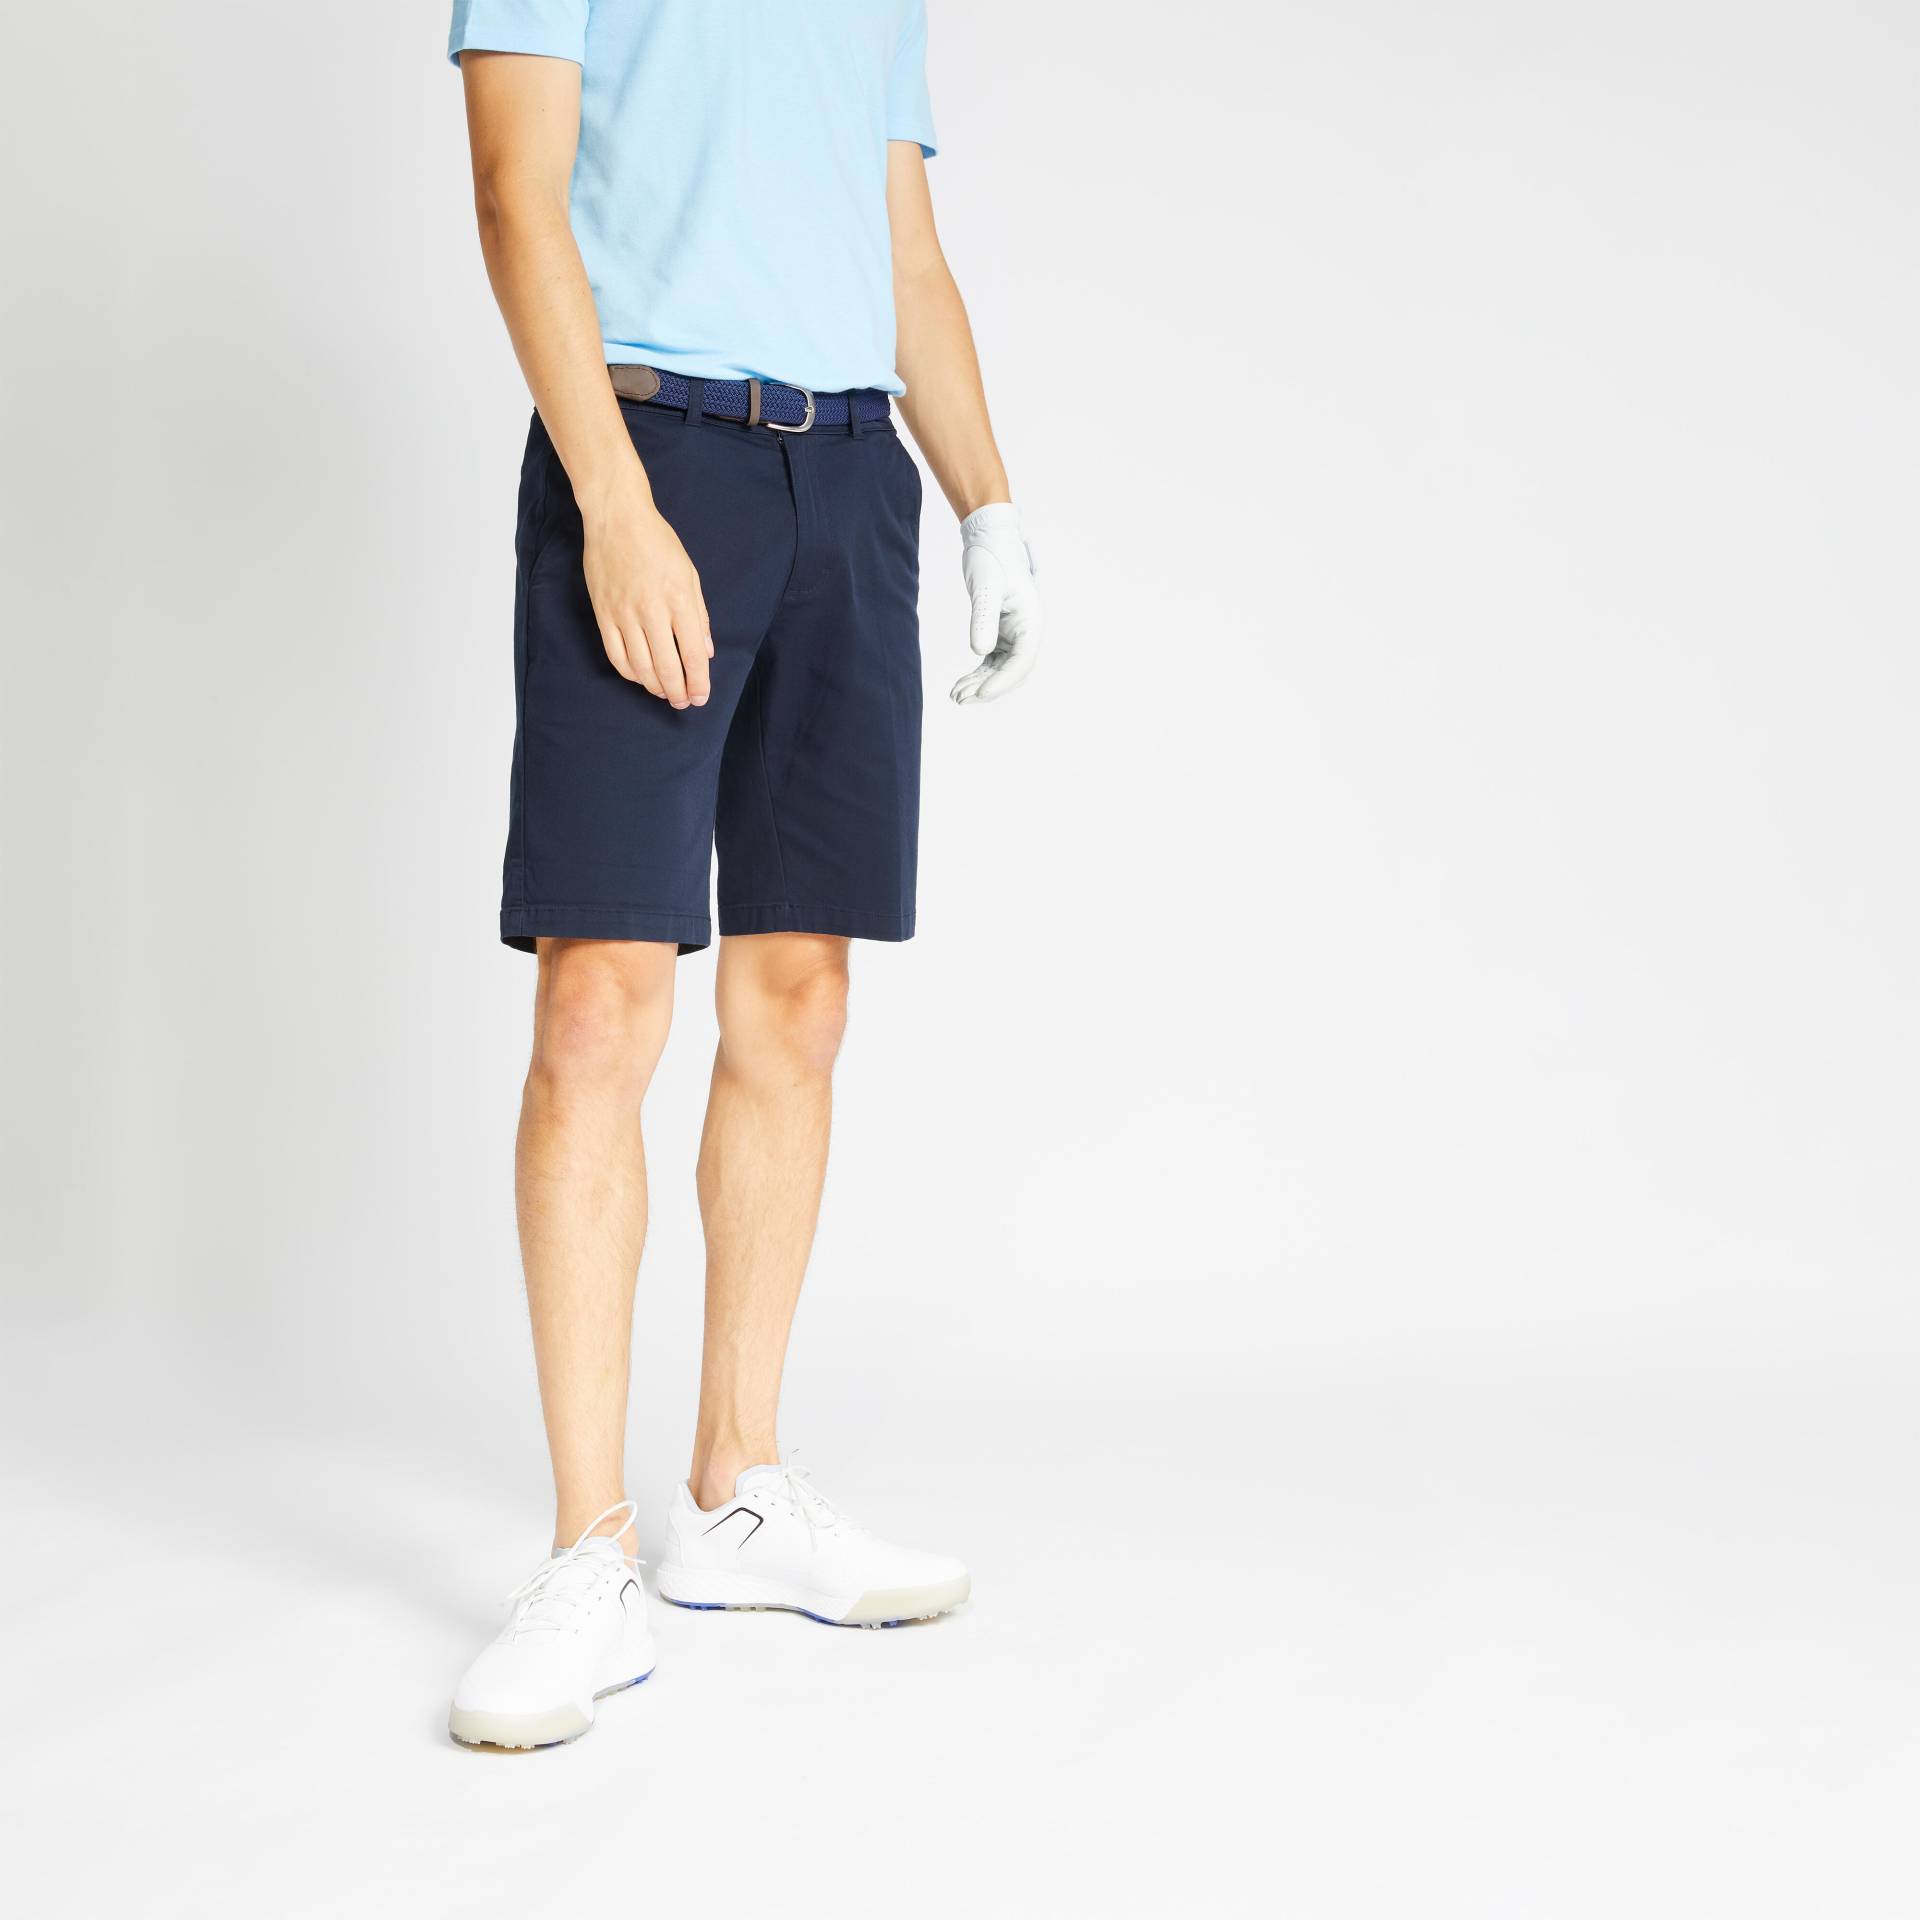 Herren Golf Shorts - MW500 marineblau von INESIS